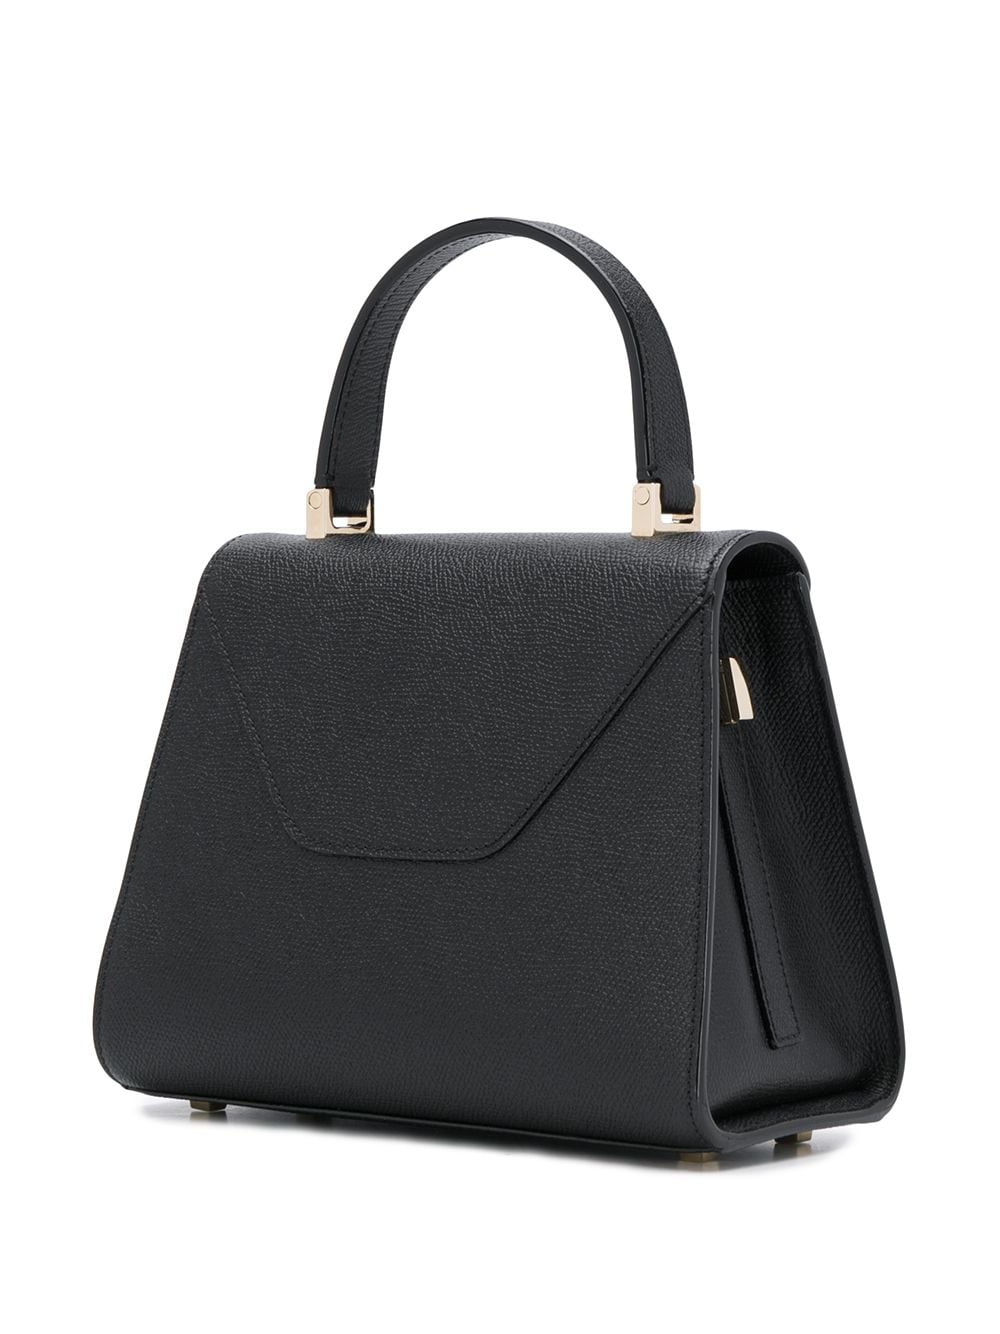 Valextra VALEXTRA- Iside Mini Leather Handbag